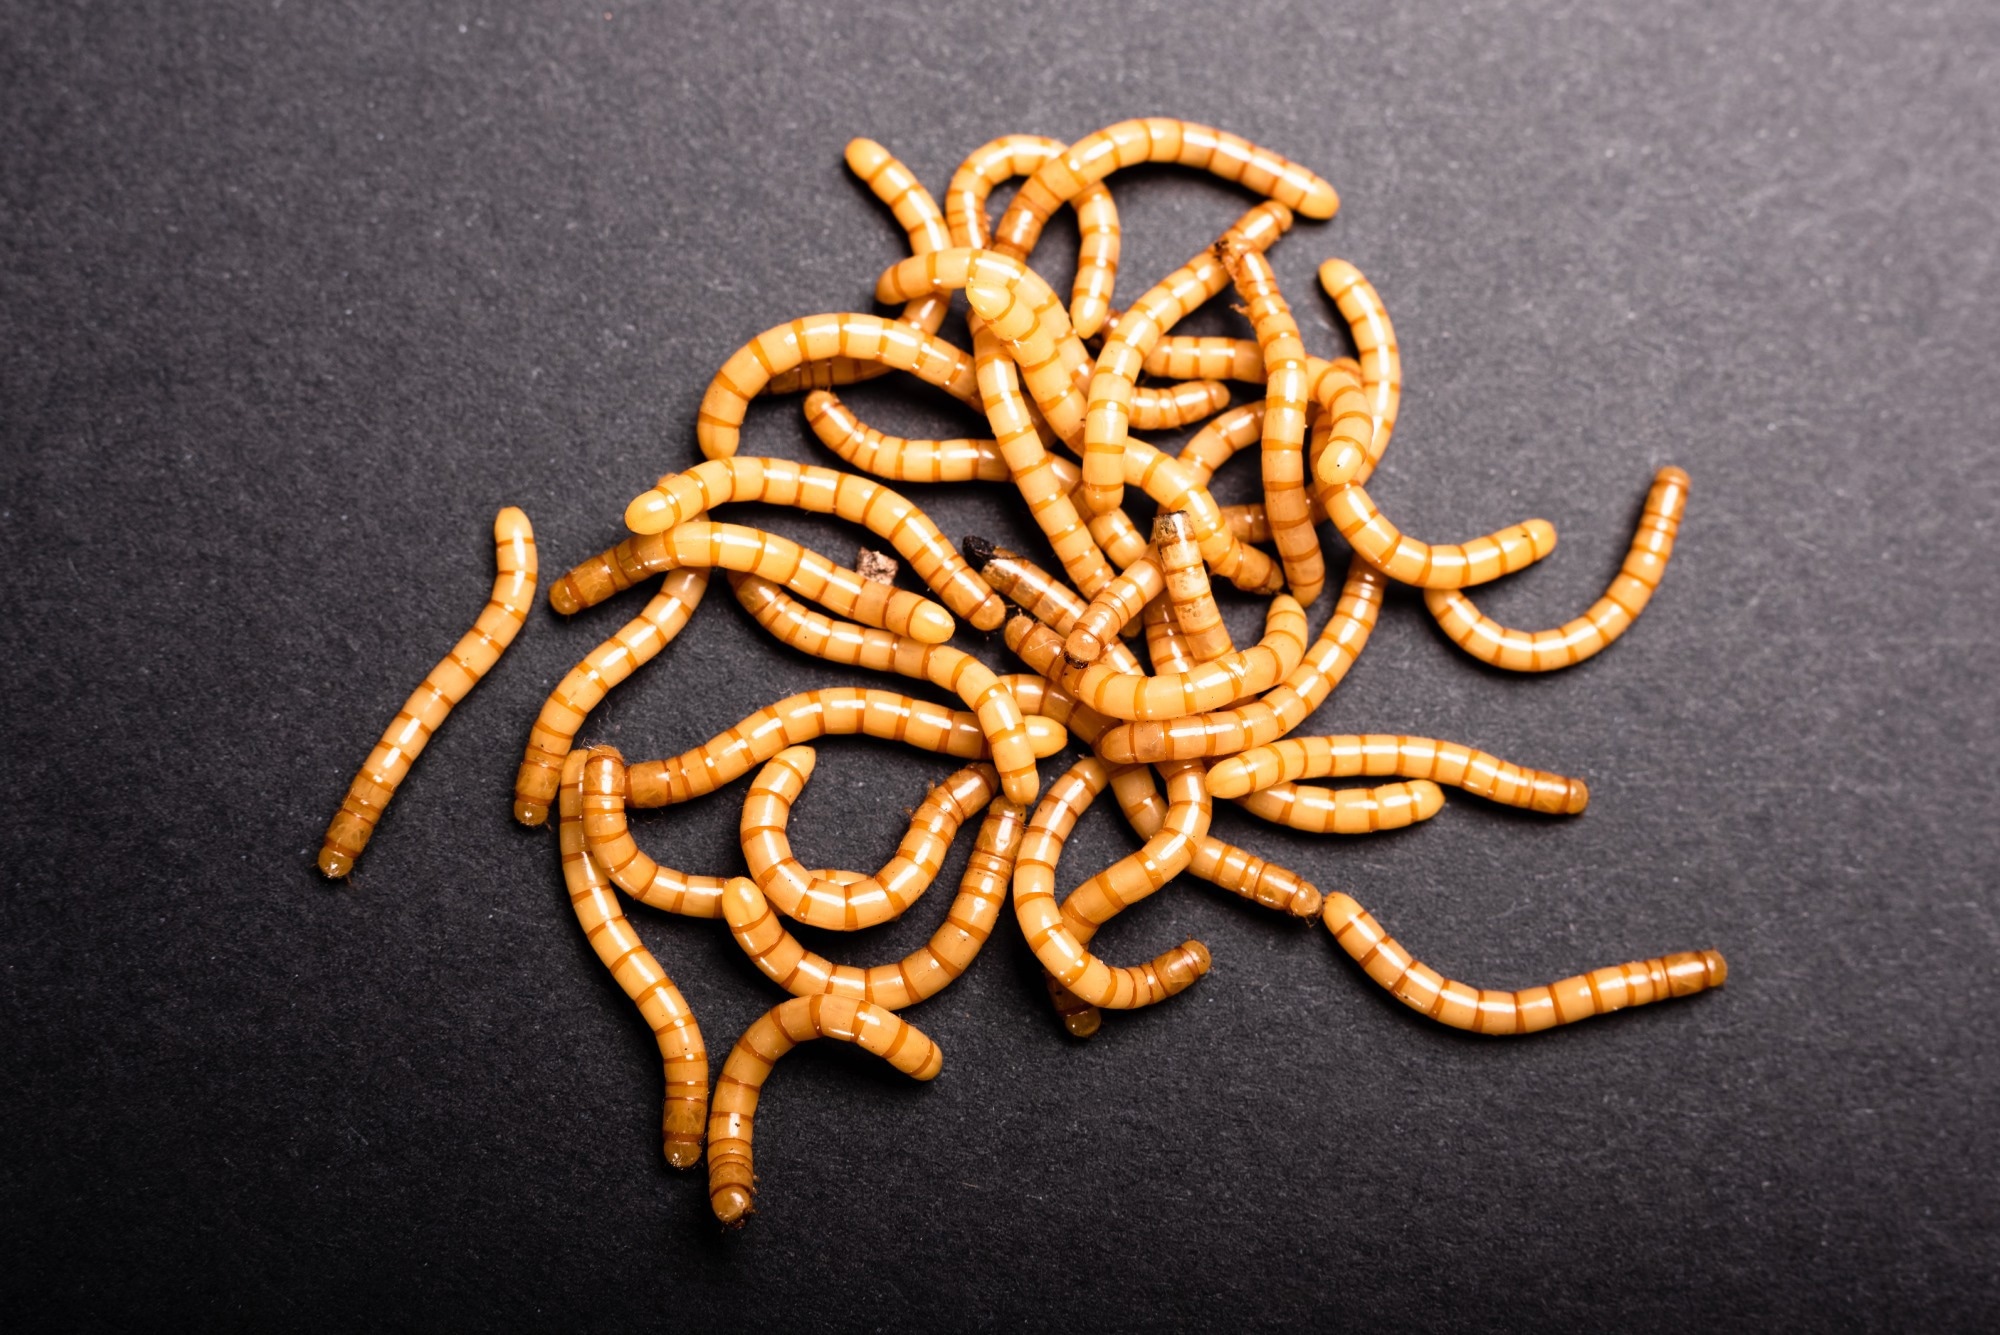 Golden mealworms, Tenebrio molitor. Image Credit: Joaquin Corbalan P / Shutterstock